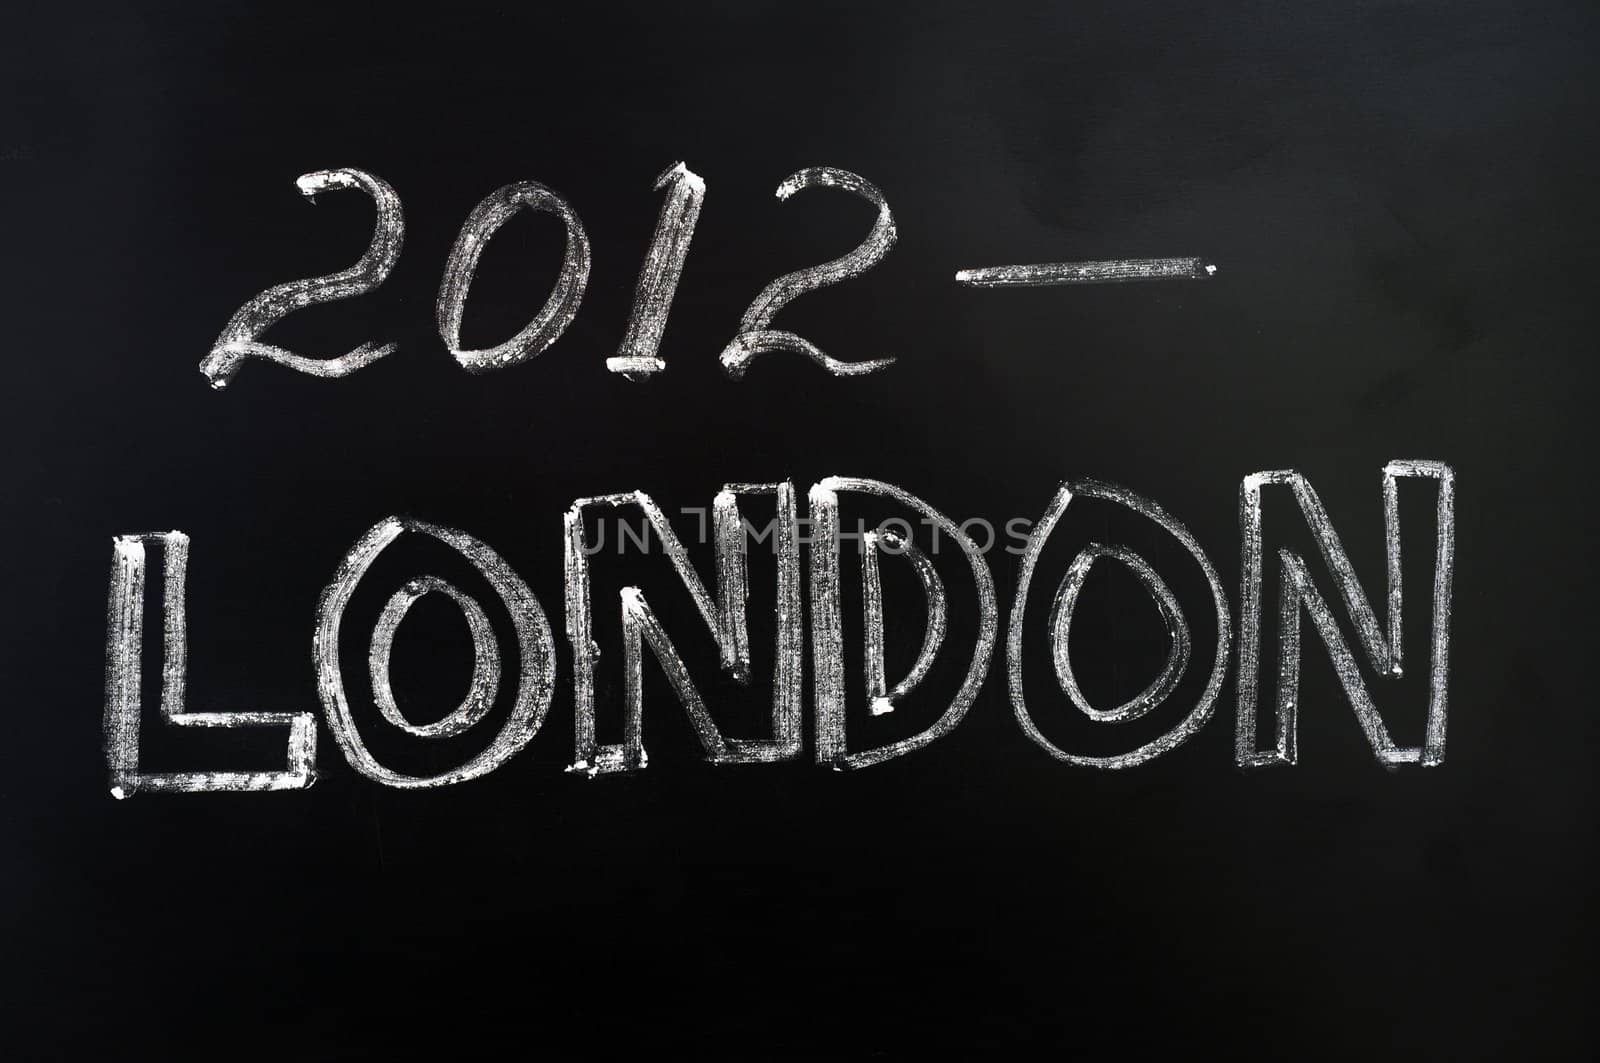 London 2012 Olympic Games - Text written on a blackboard